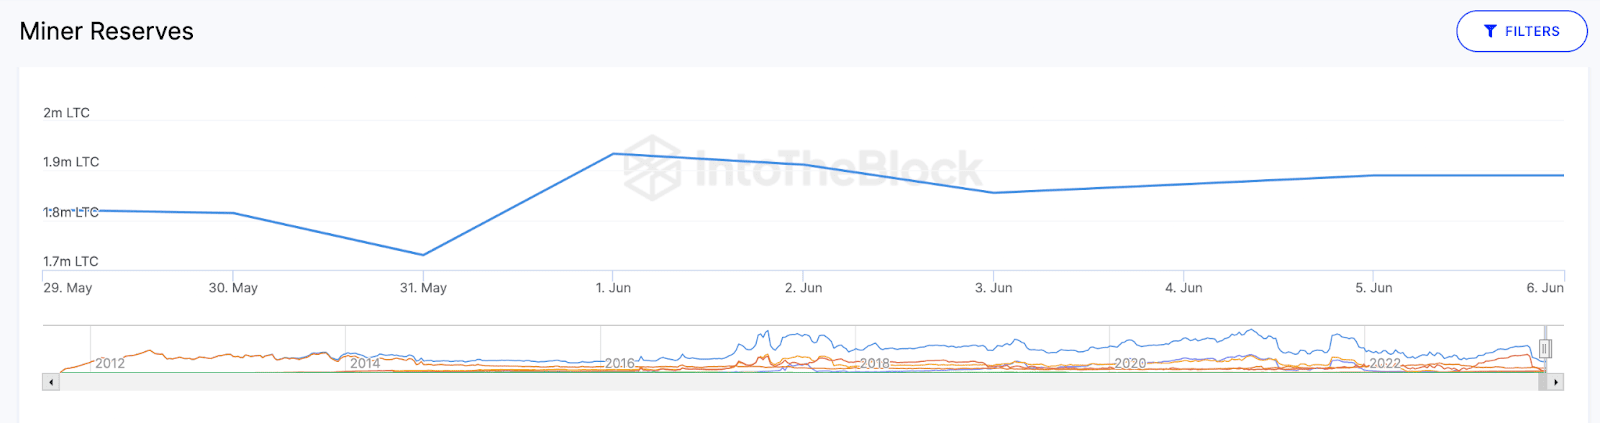 Майнеры Litecoin сейчас владеют около 2,5% всех монет в обороте.
